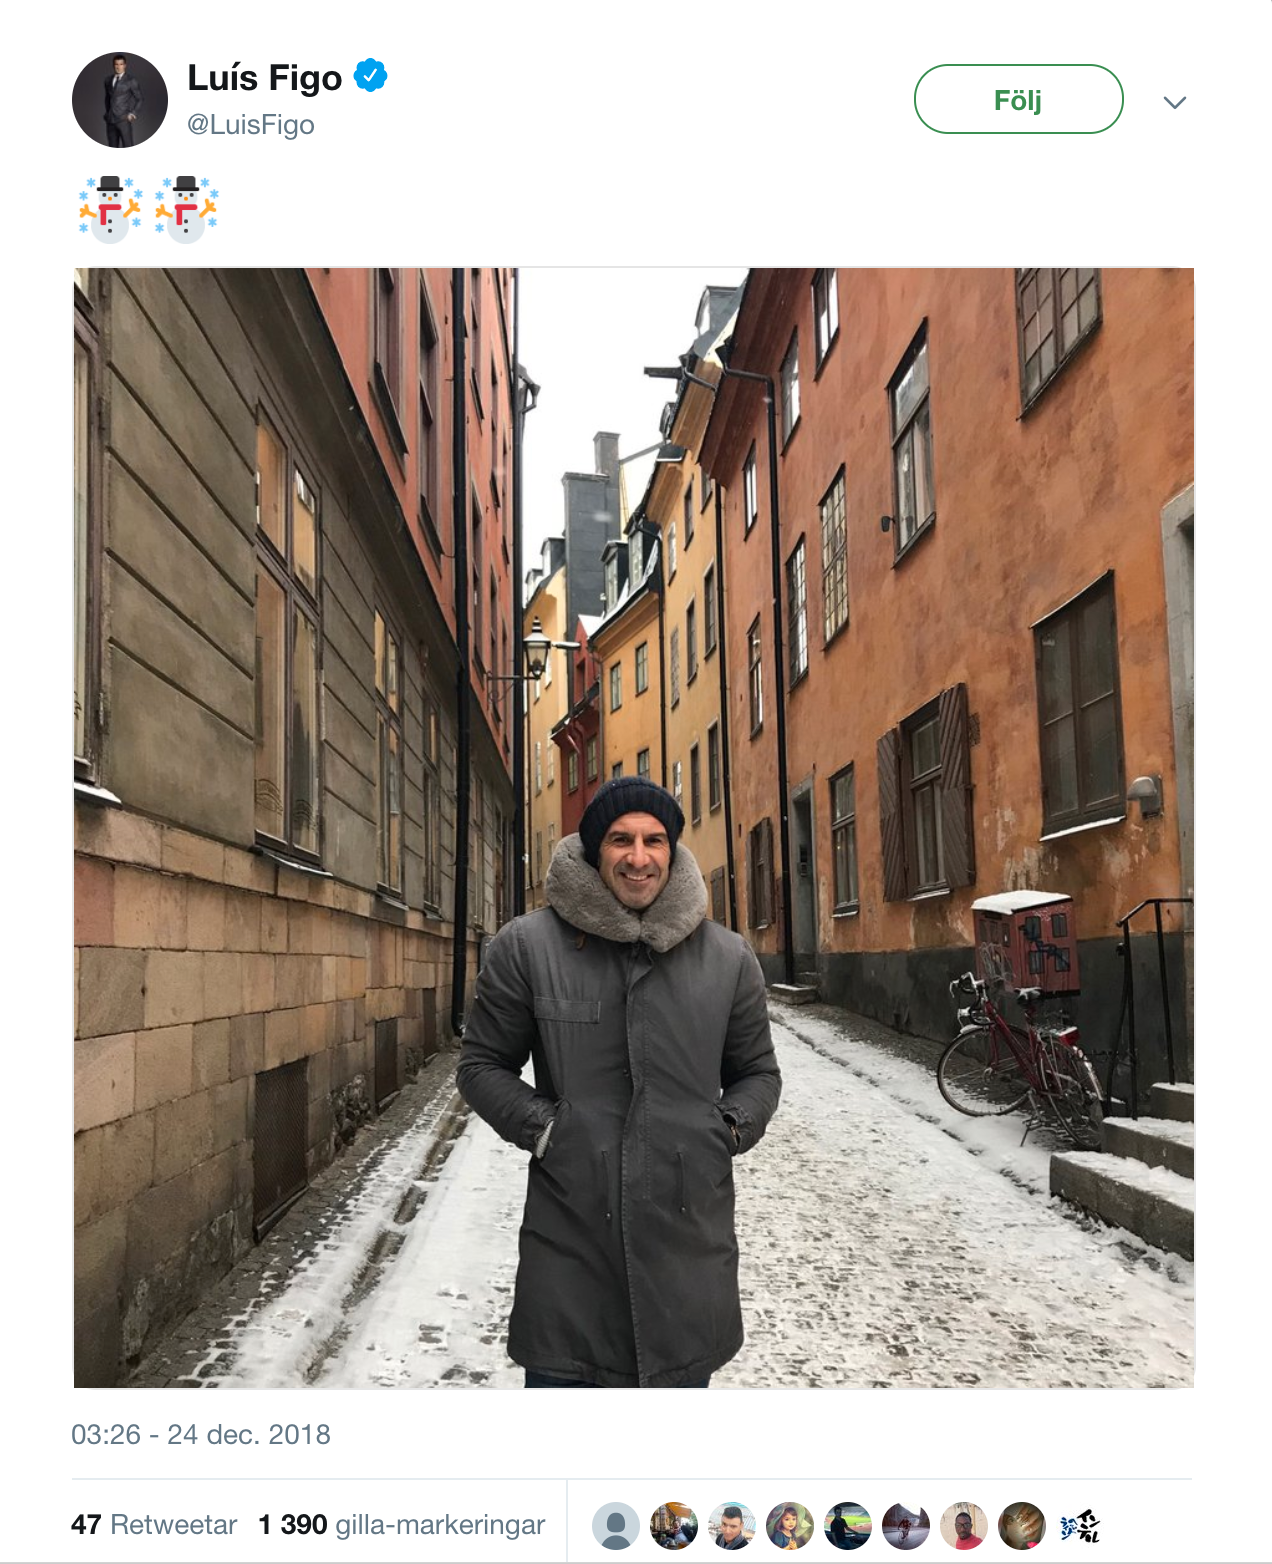 Luis Figo, vars fru är svensk, firade julen i Stockholm.